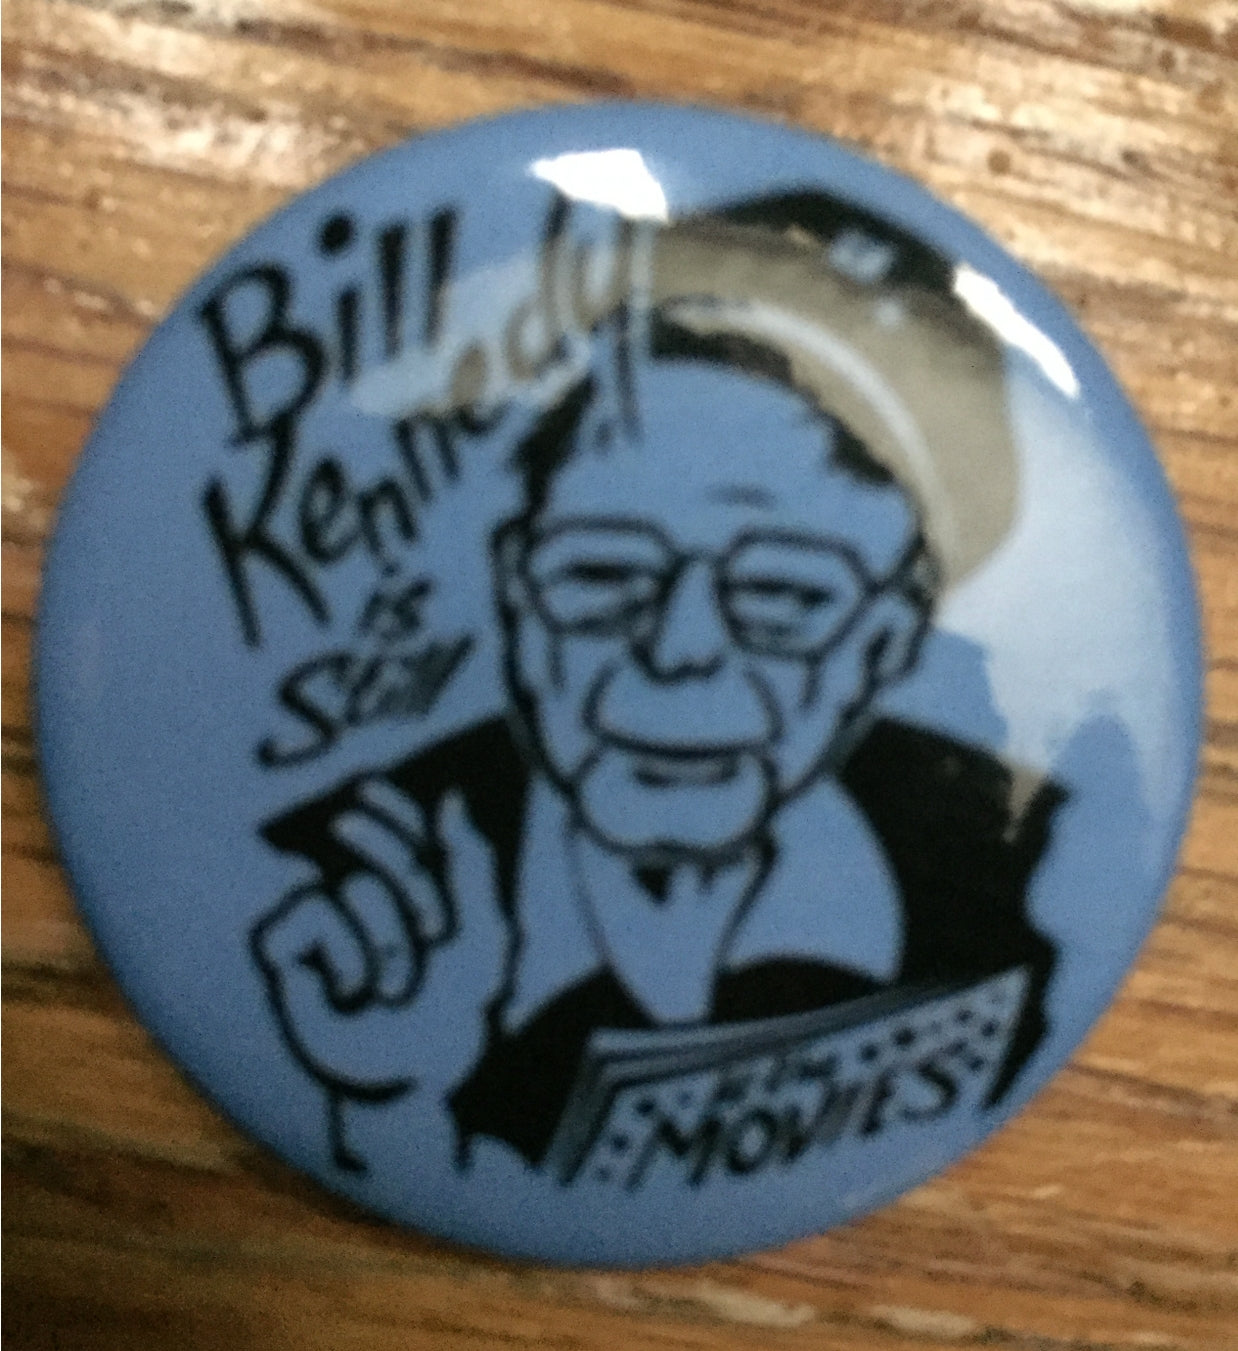 bill kennedy